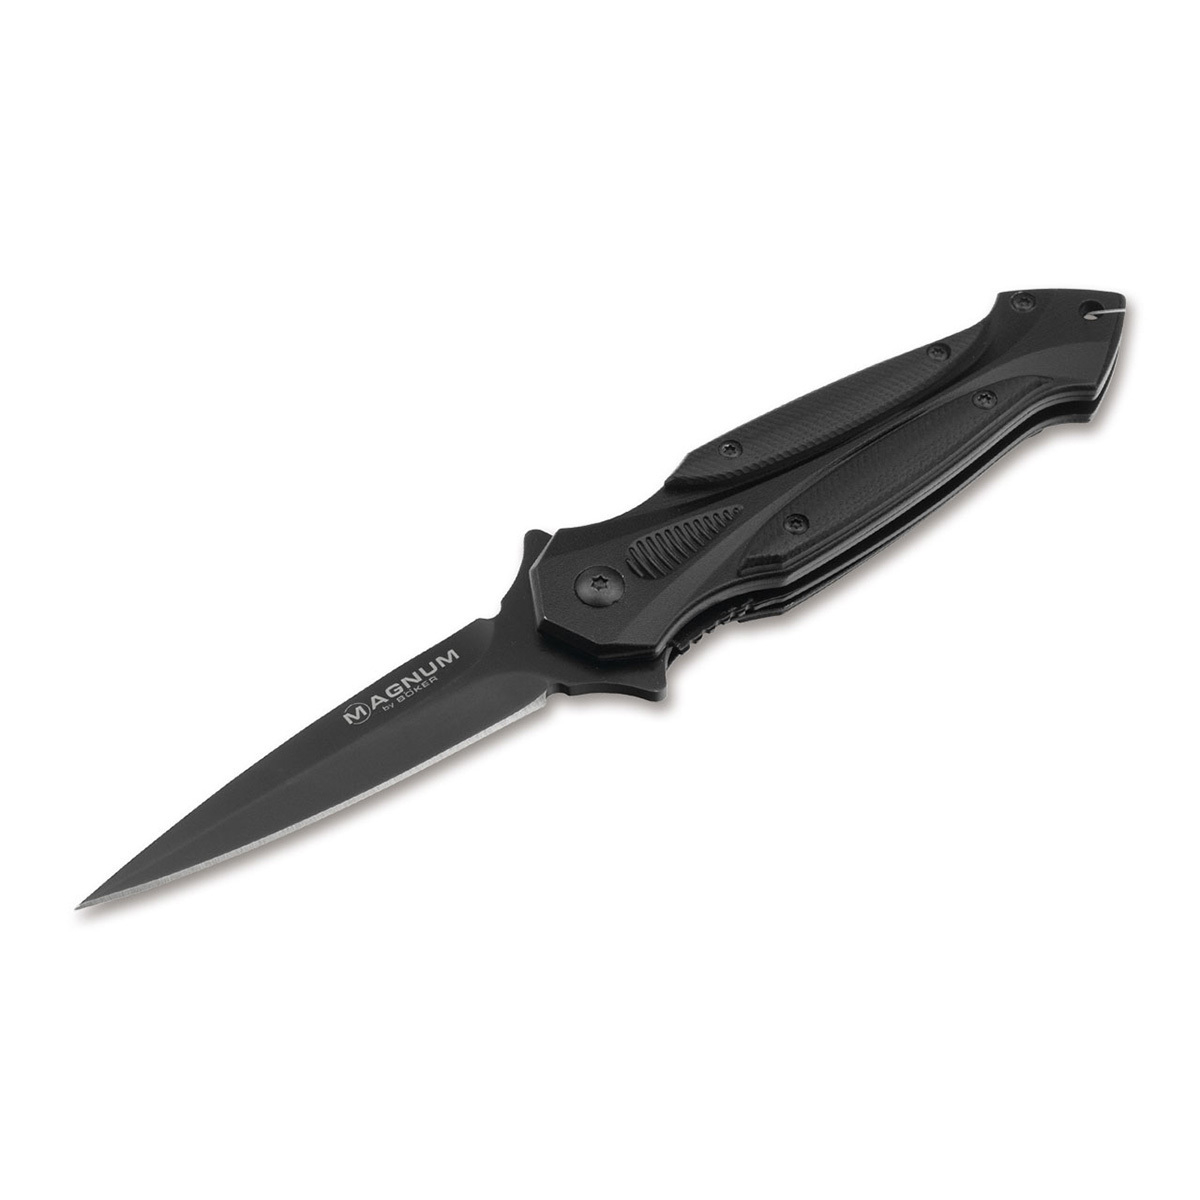 Полуавтоматический складной нож Boker Starfighter 2.0, сталь 440А, рукоять G-10 полуавтоматический складной нож utilitac assisted клинок   рукоять   g 10